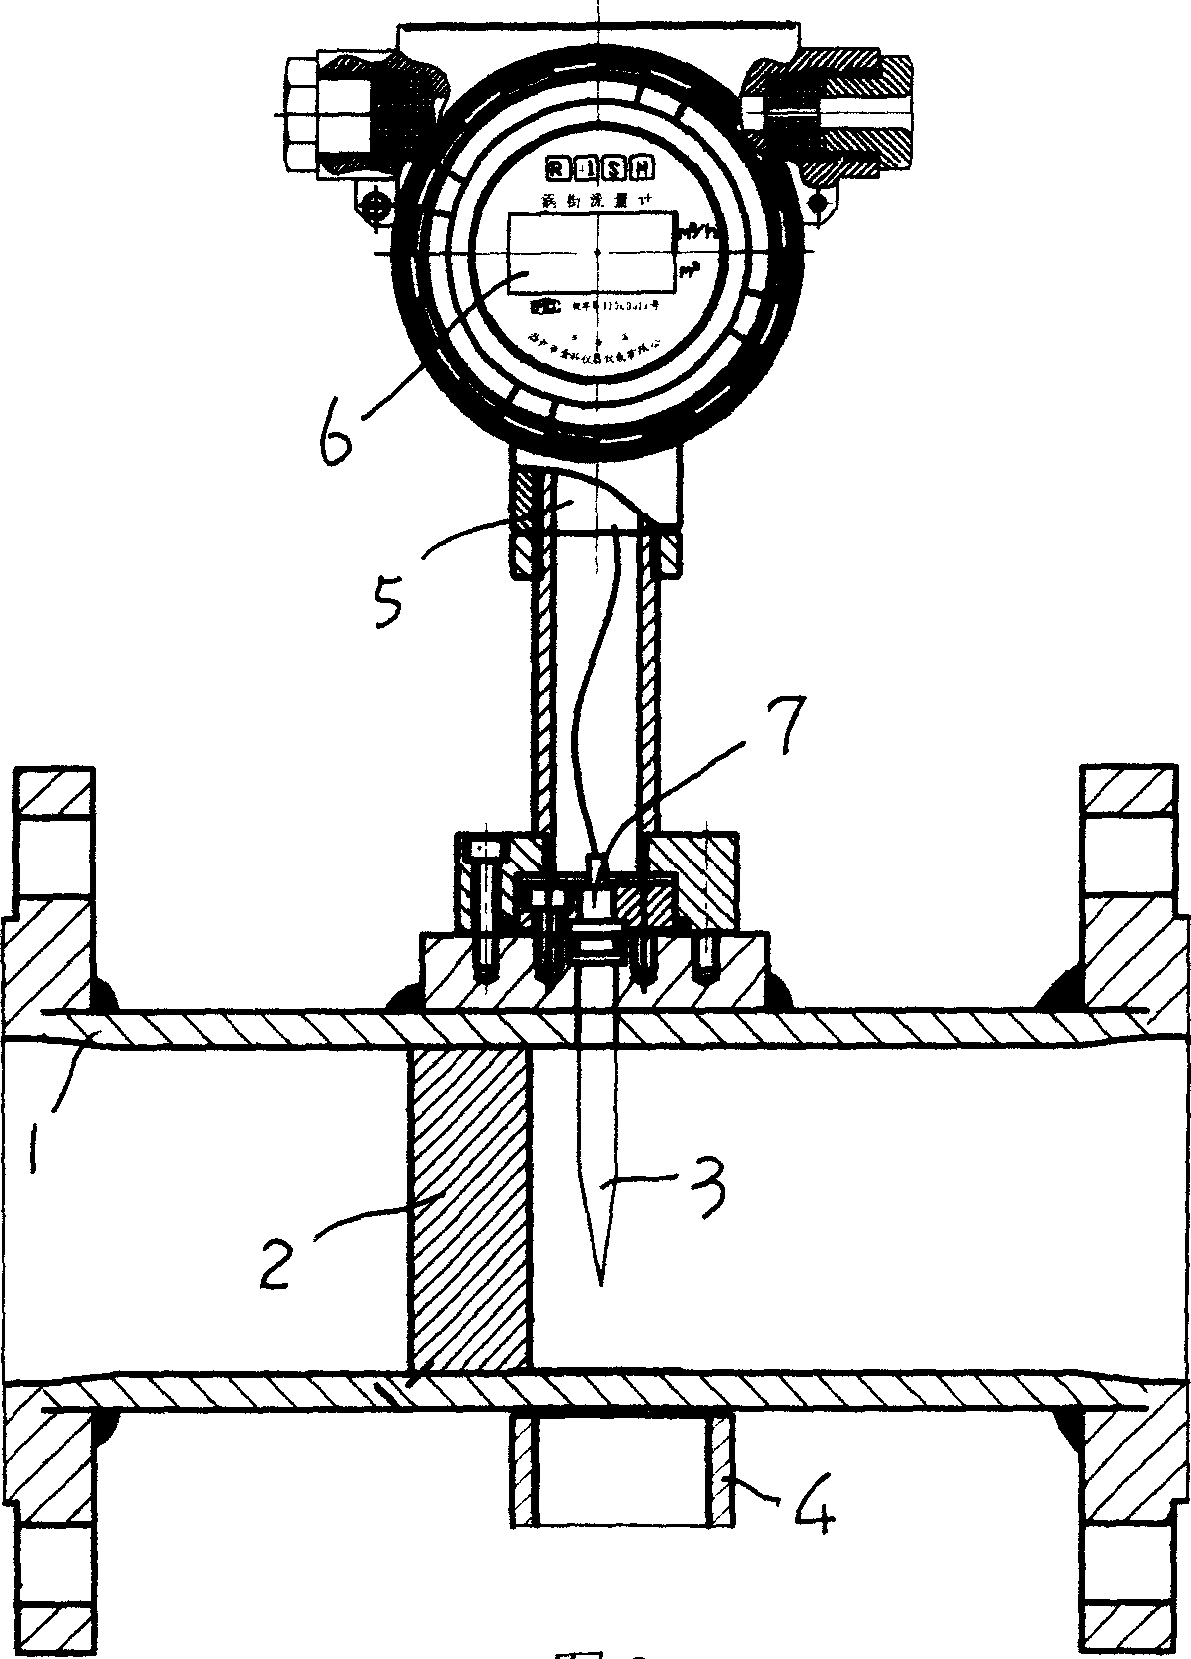 Magnetic vortex street flowmeter